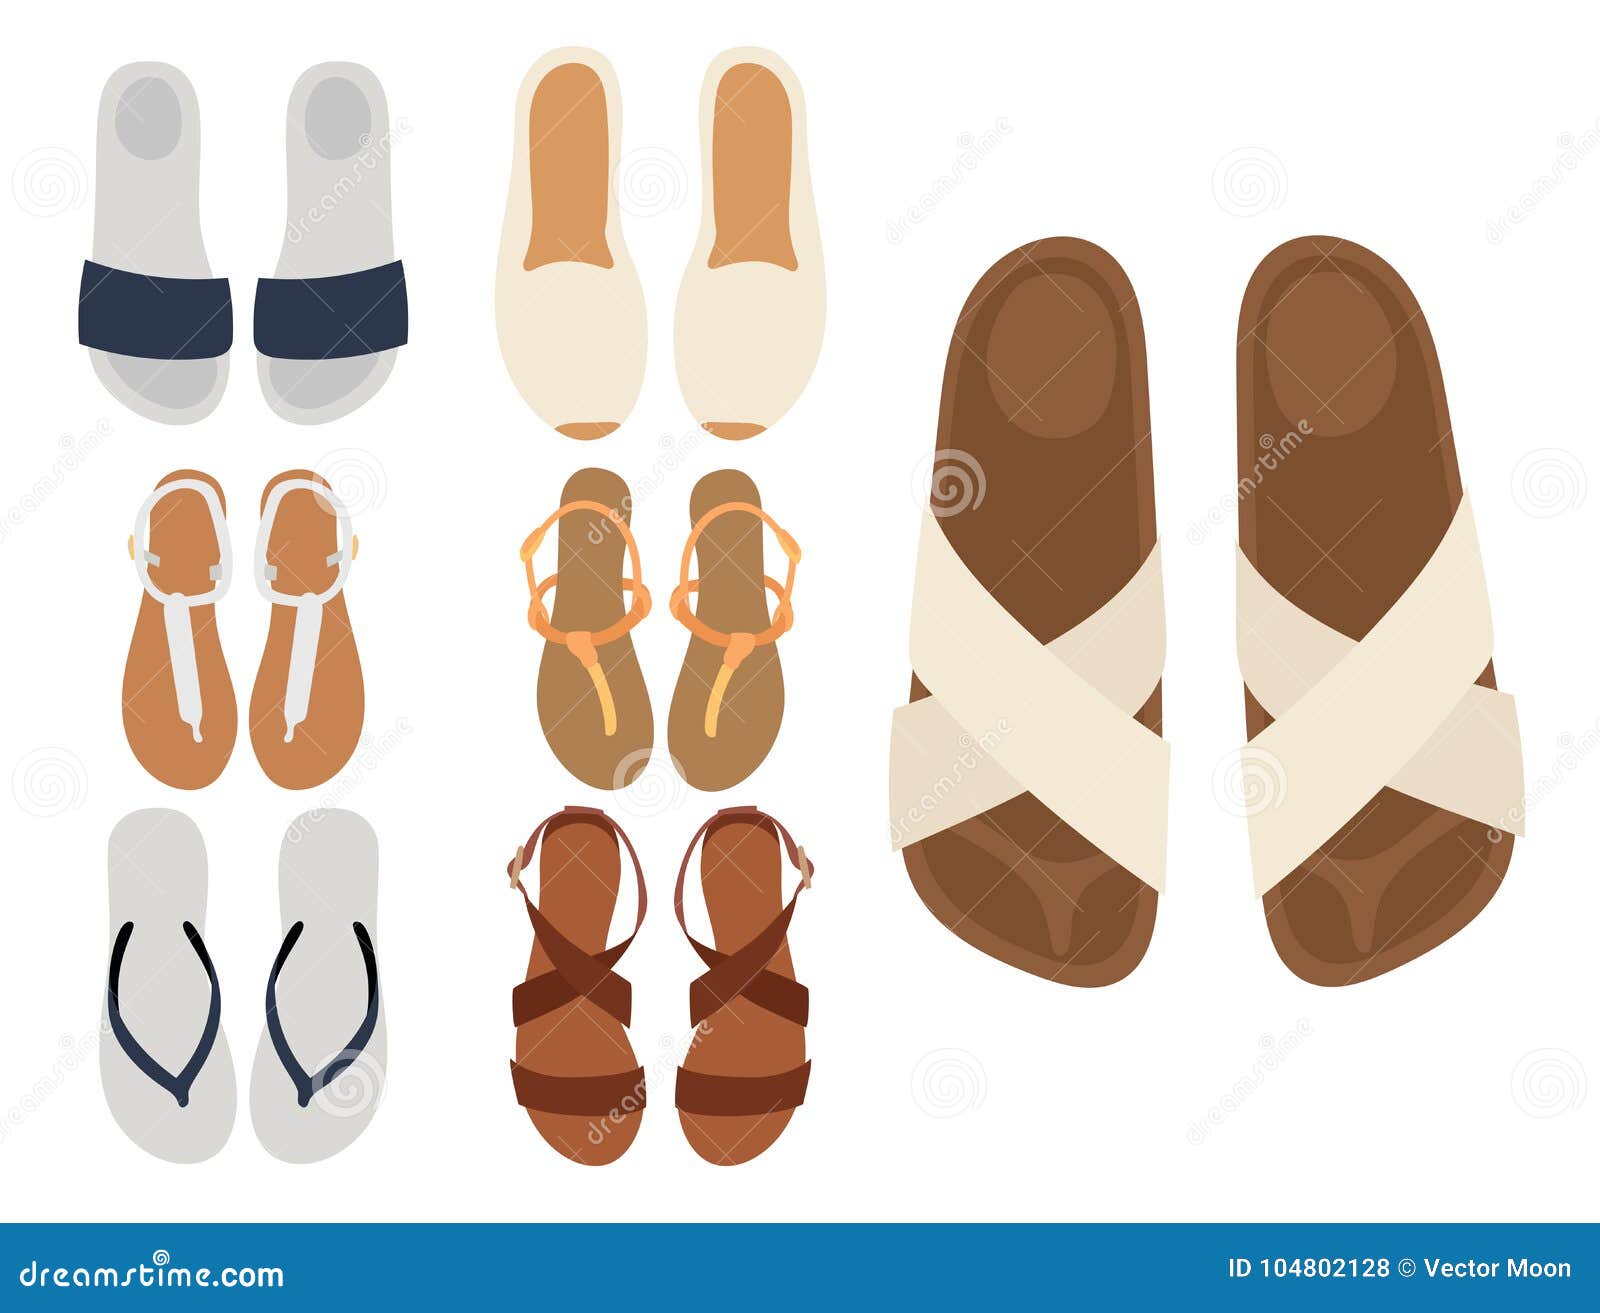 female slippers design